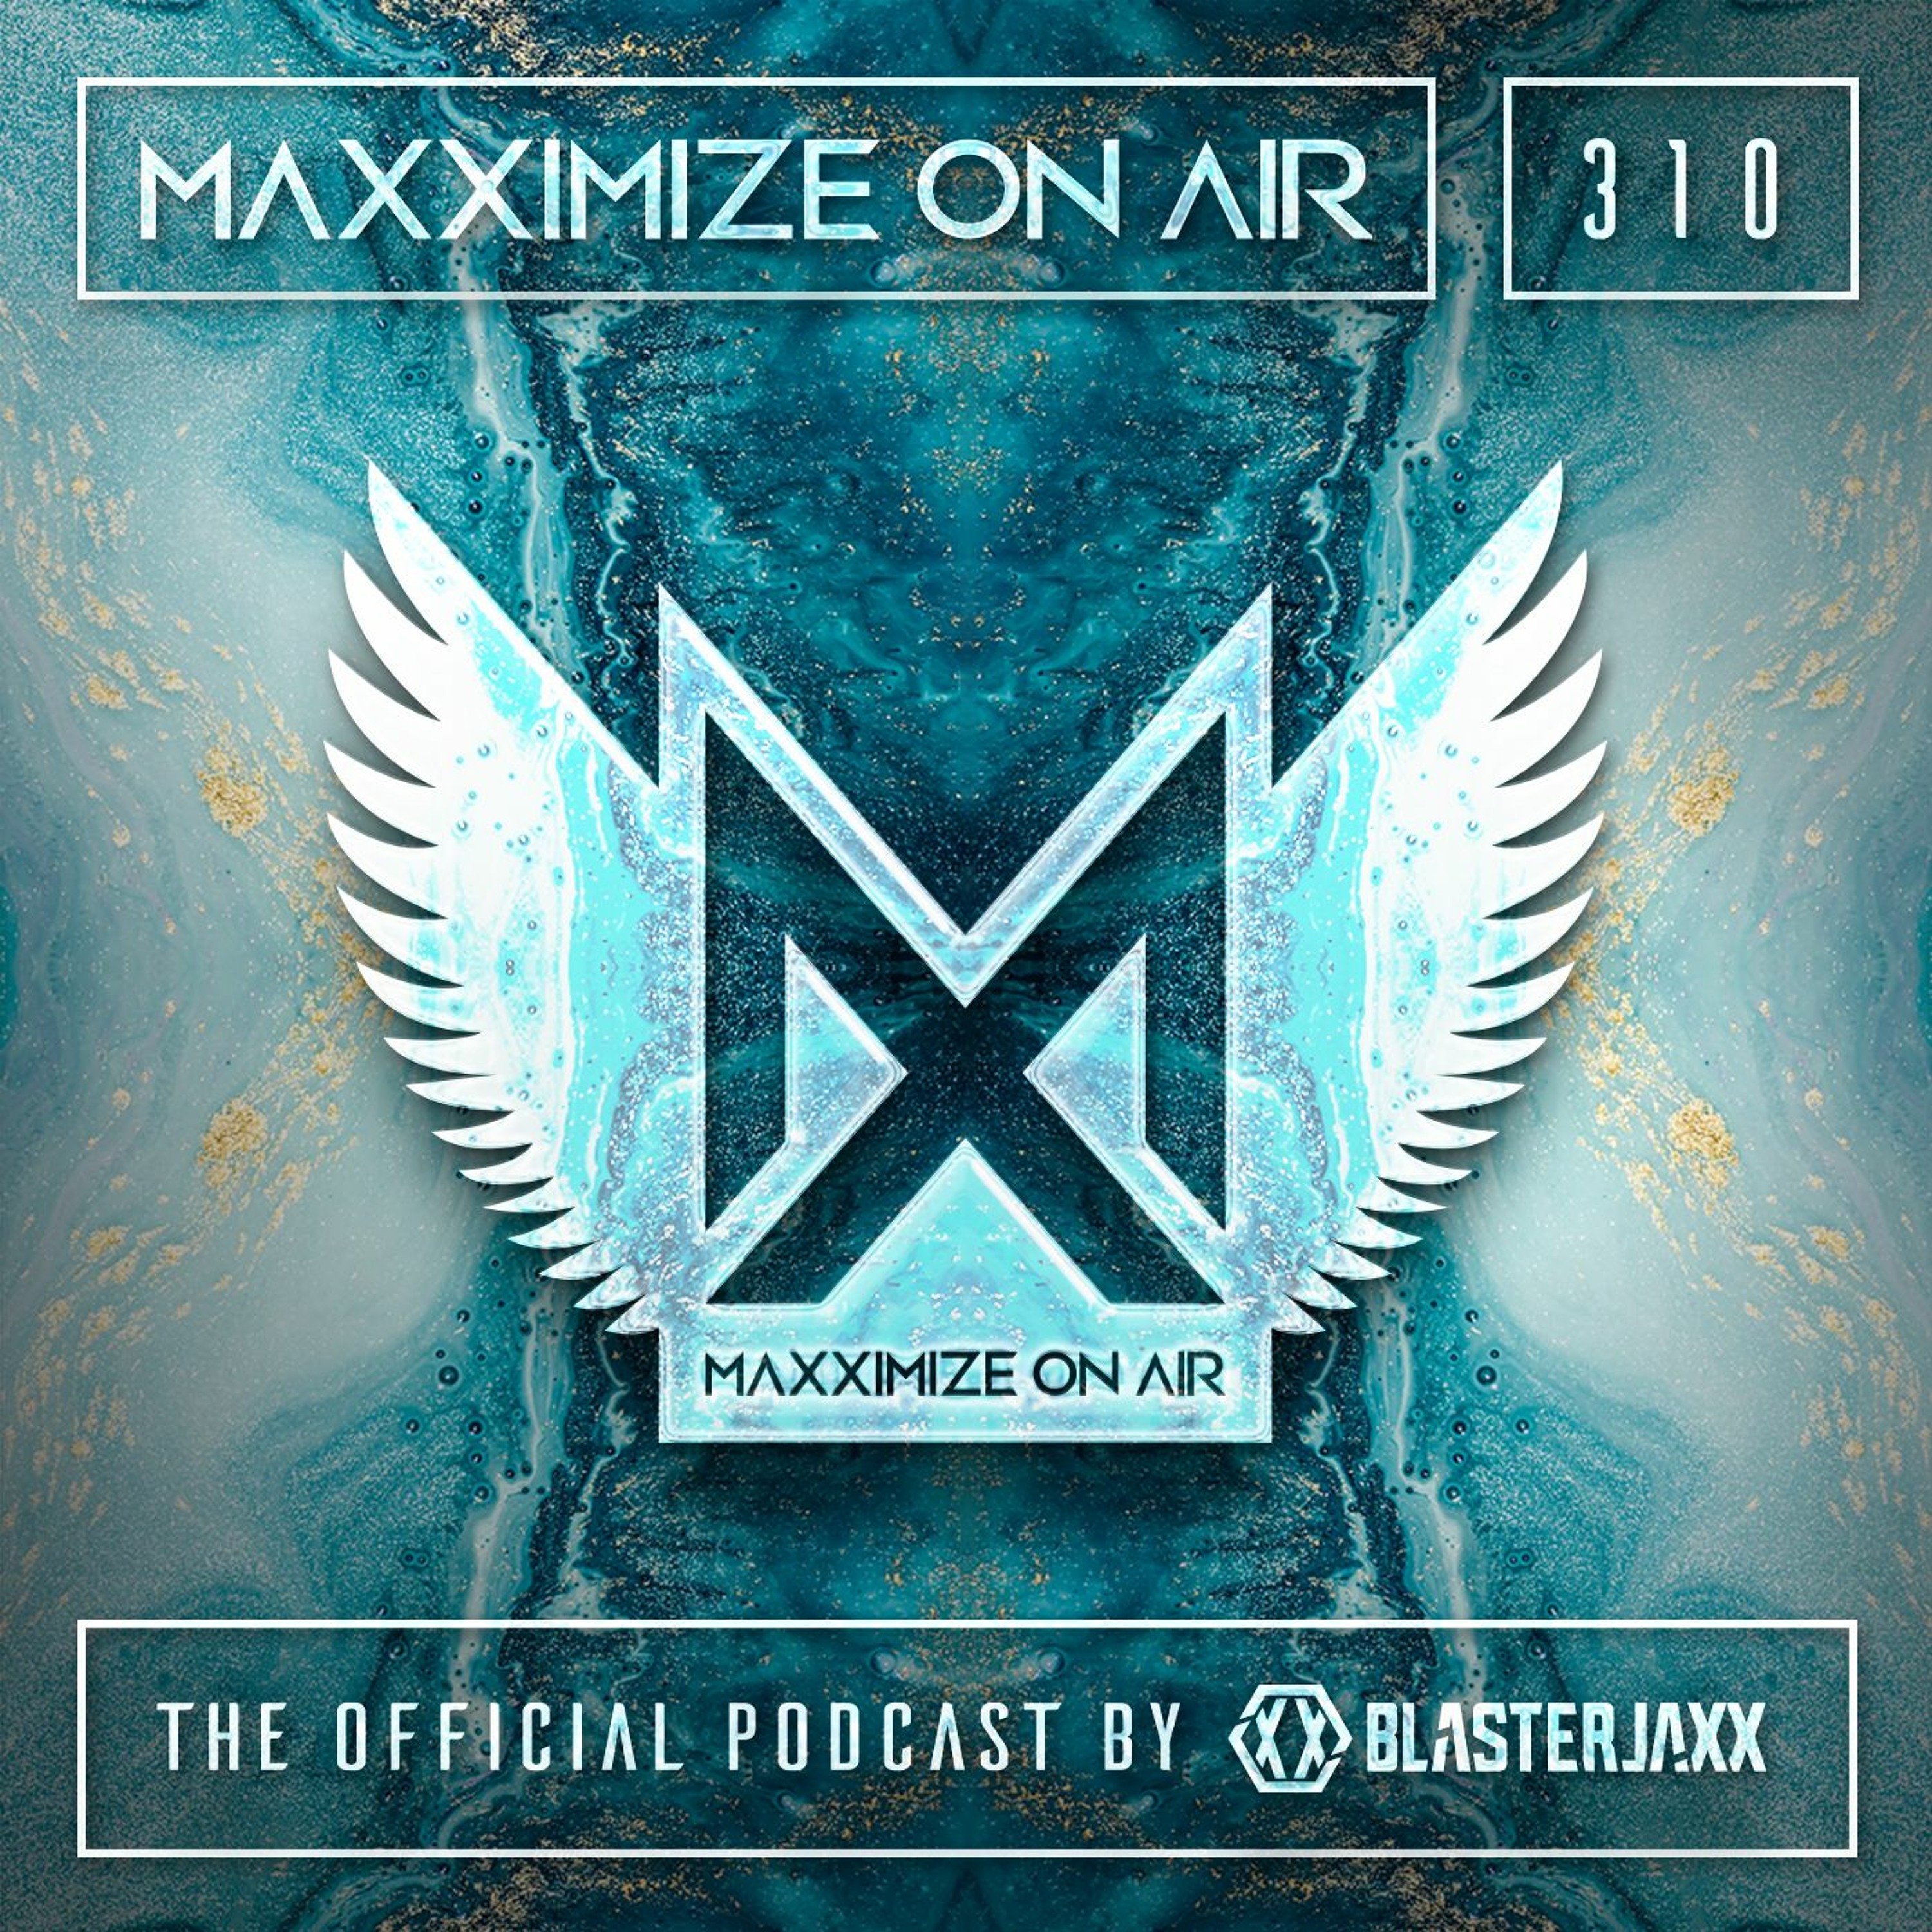 Blasterjaxx present Maxximize On Air #310